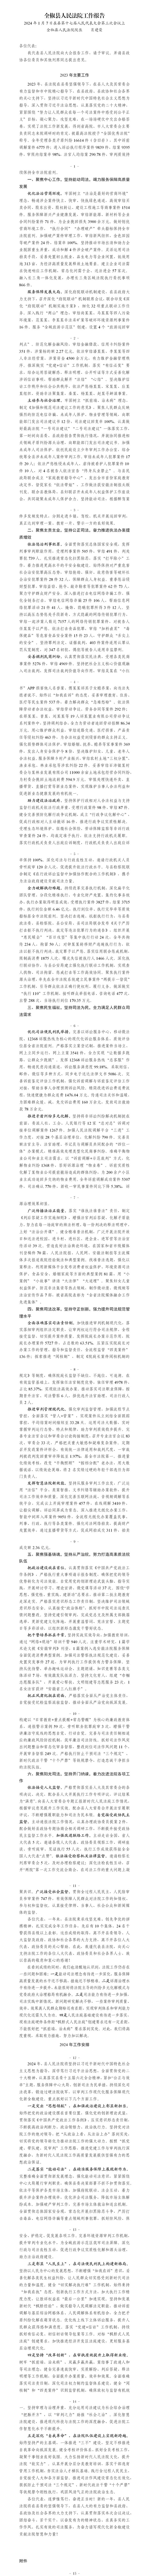 全椒县人民法院2023年工作报告（定稿修改稿1.3）_01.png